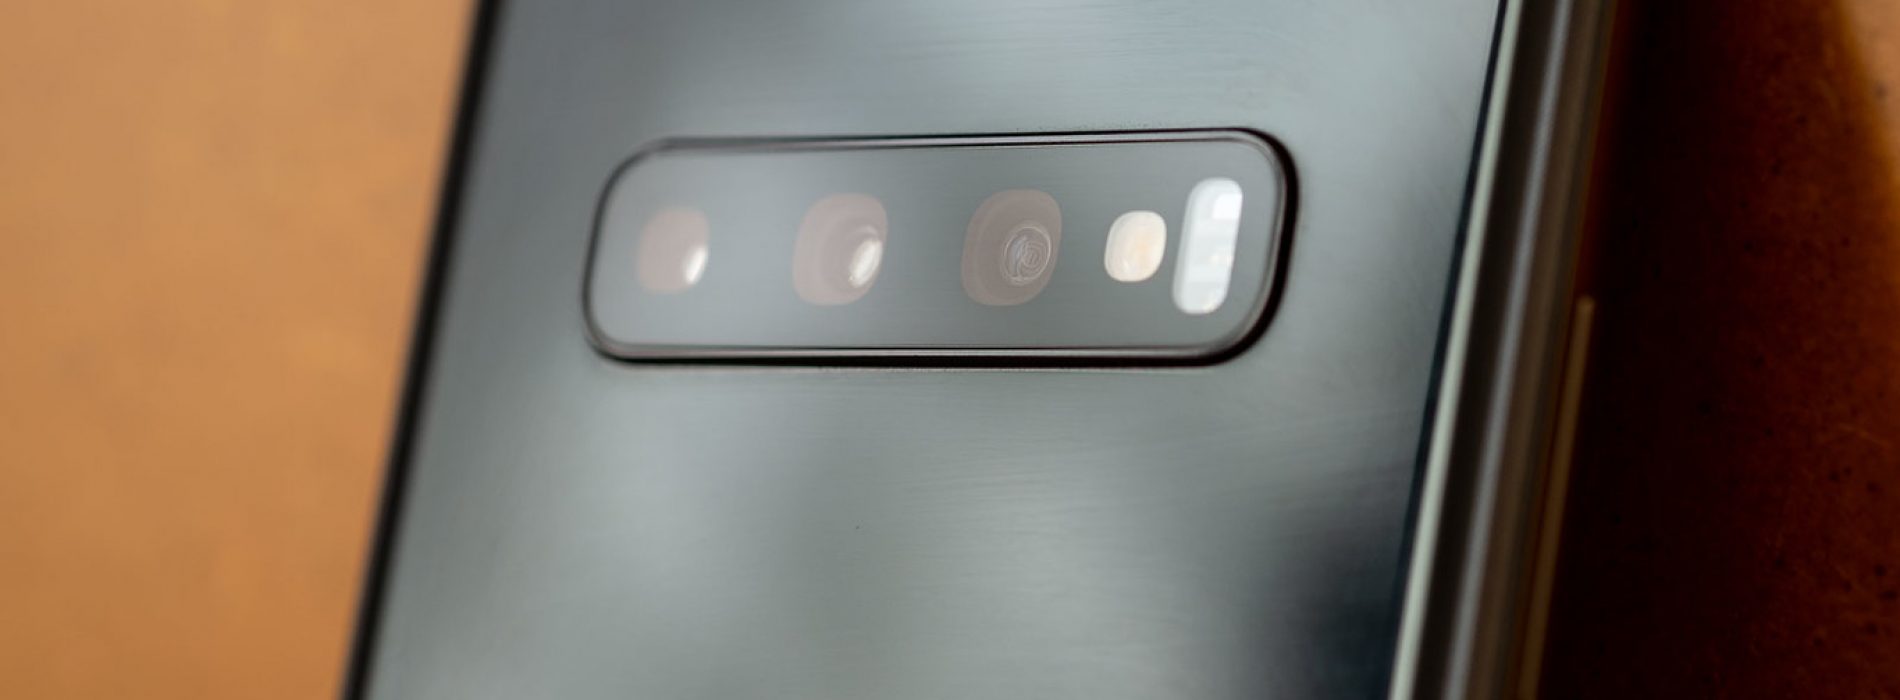 El futuro Samsung Galaxy S10 Lite tendrá tres cámaras a la espalda según una filtración